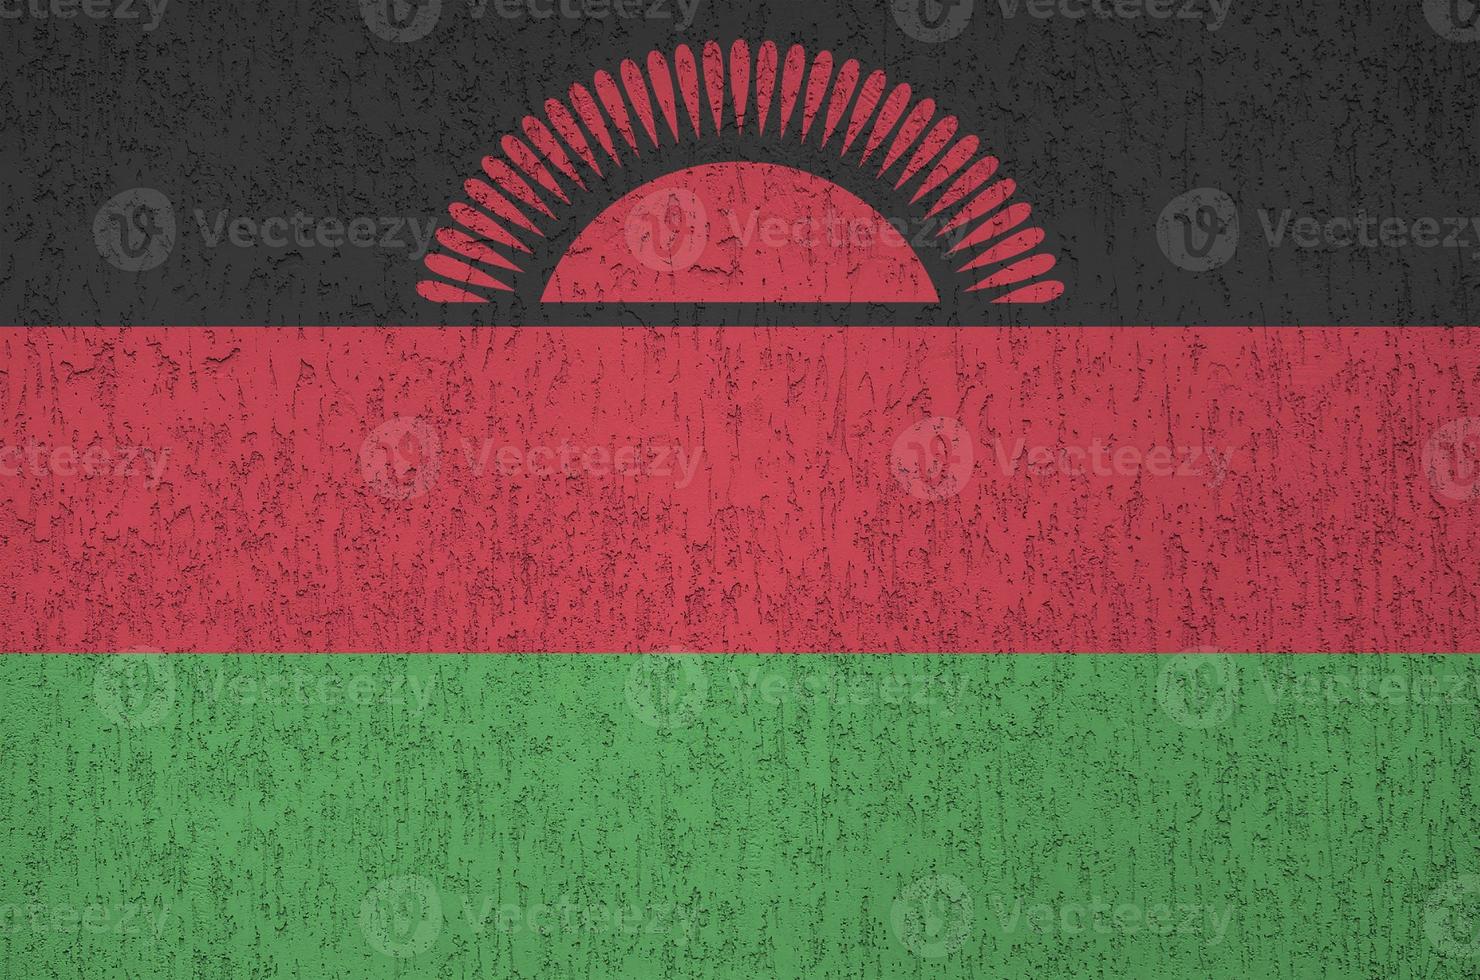 malawi-flagge in hellen farben auf alter reliefputzwand dargestellt. strukturierte Fahne auf rauem Hintergrund foto